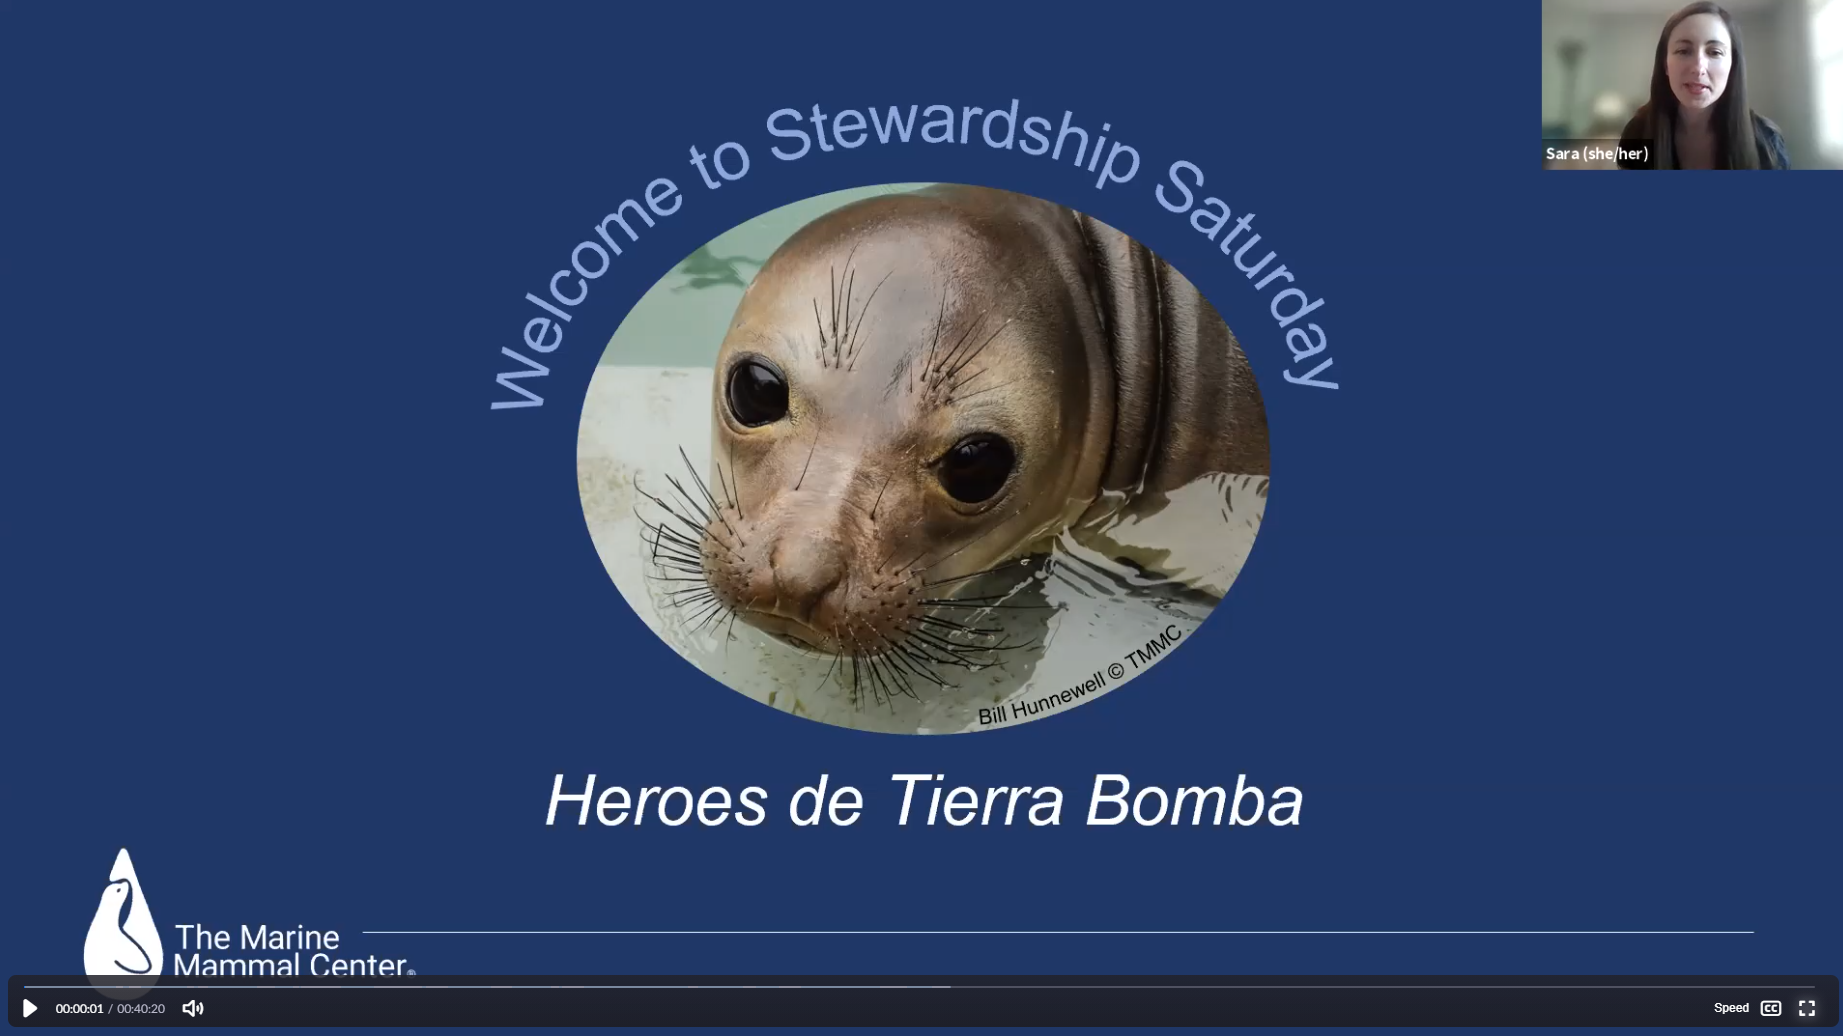 Stewardship Saturday: Heroes de Tierra Bomba